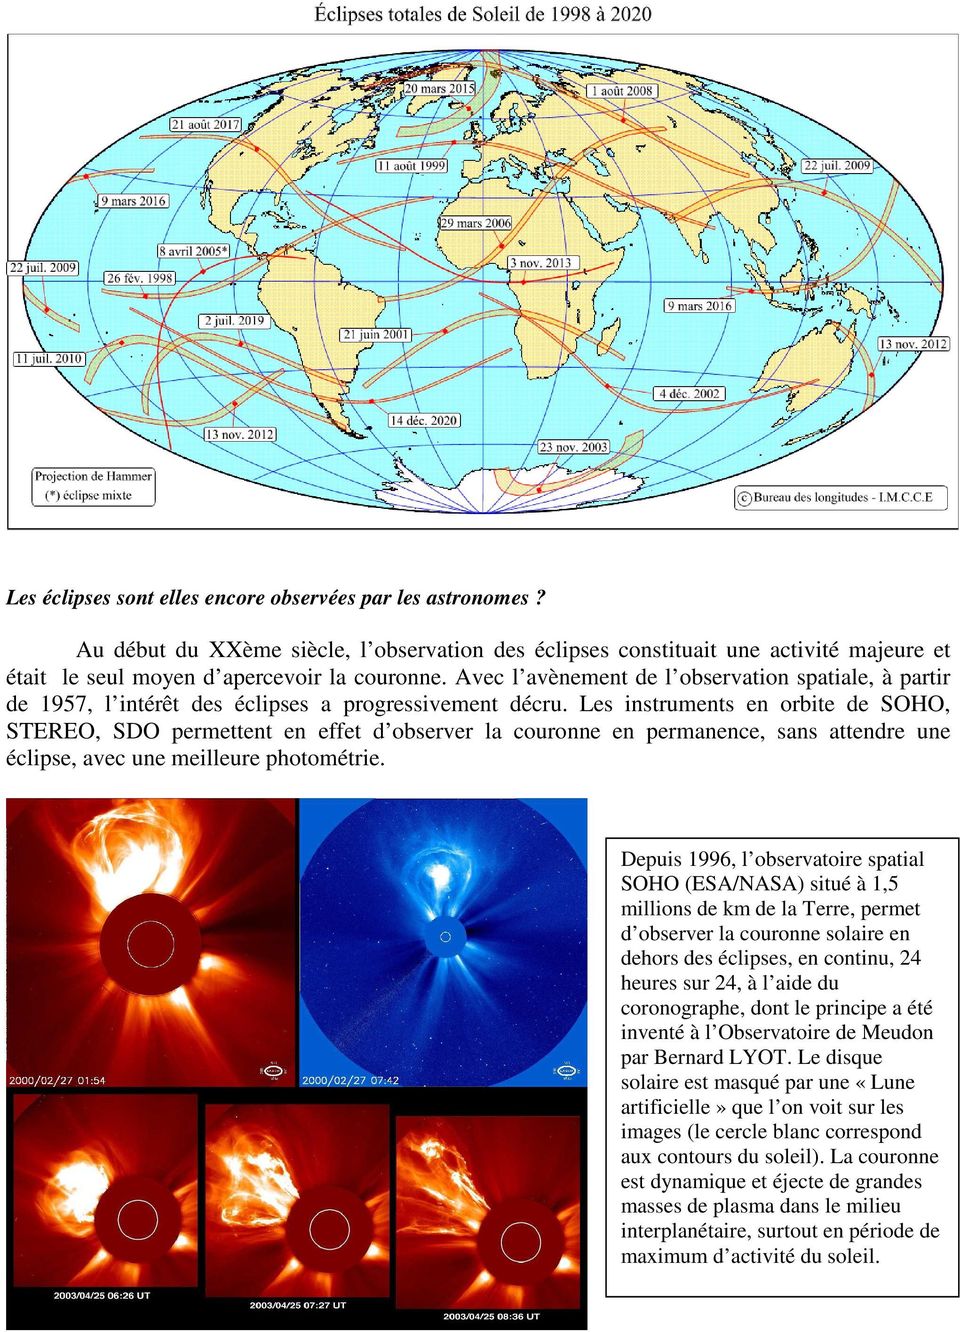 Les instruments en orbite de SOHO, STEREO, SDO permettent en effet d observer la couronne en permanence, sans attendre une éclipse, avec une meilleure photométrie.